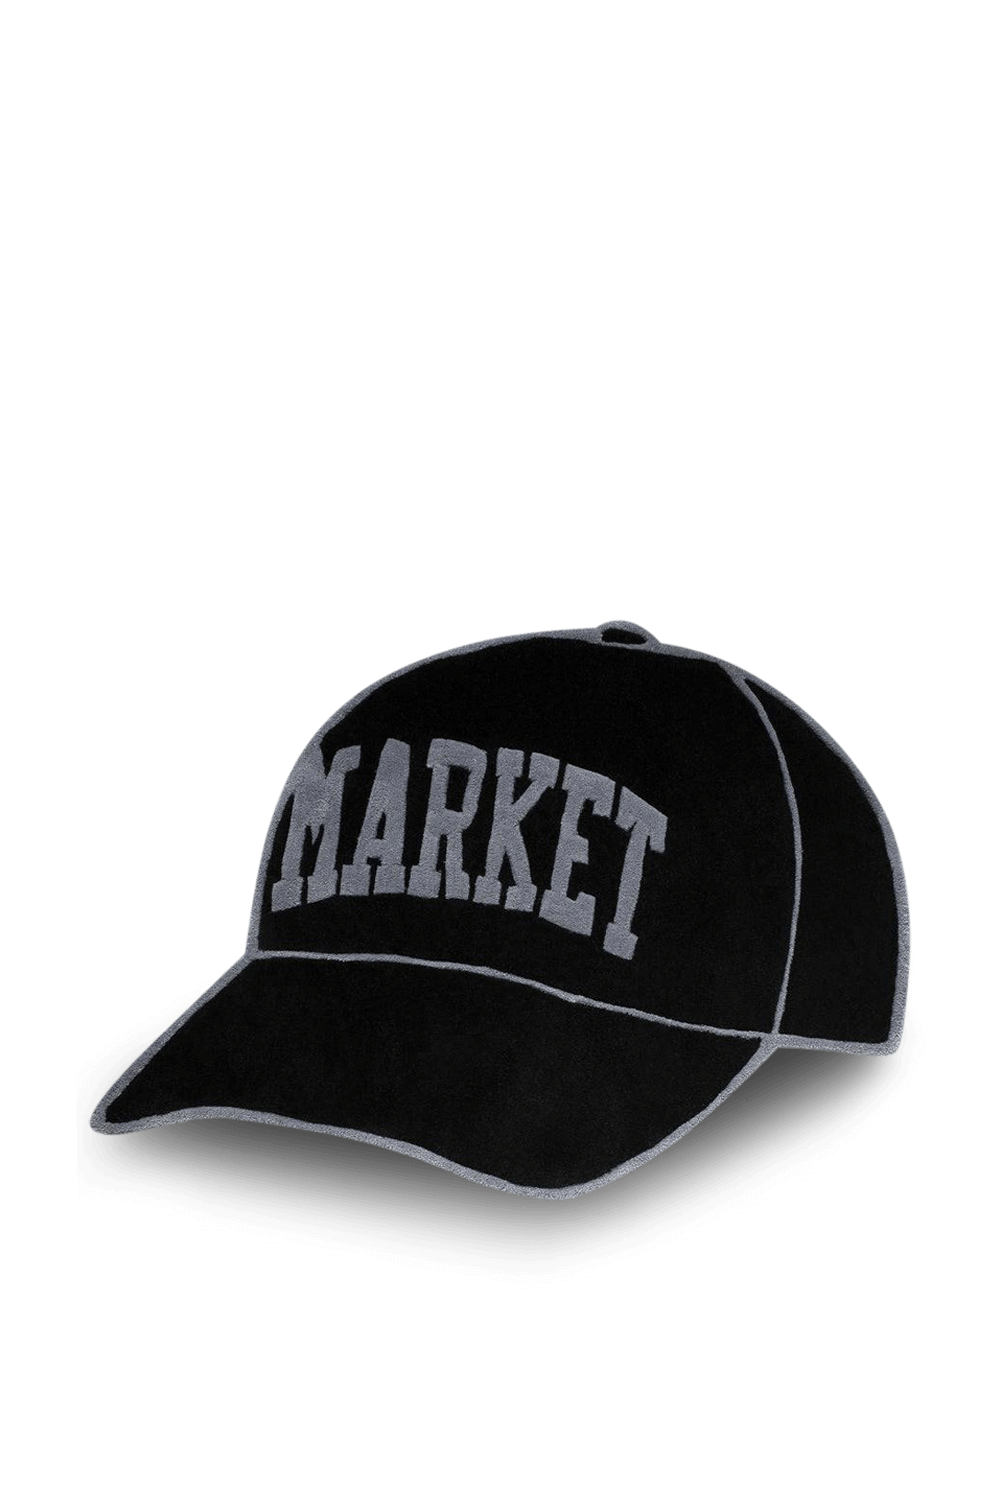 שטיח רצפה שחור בצורת כובע MARKET